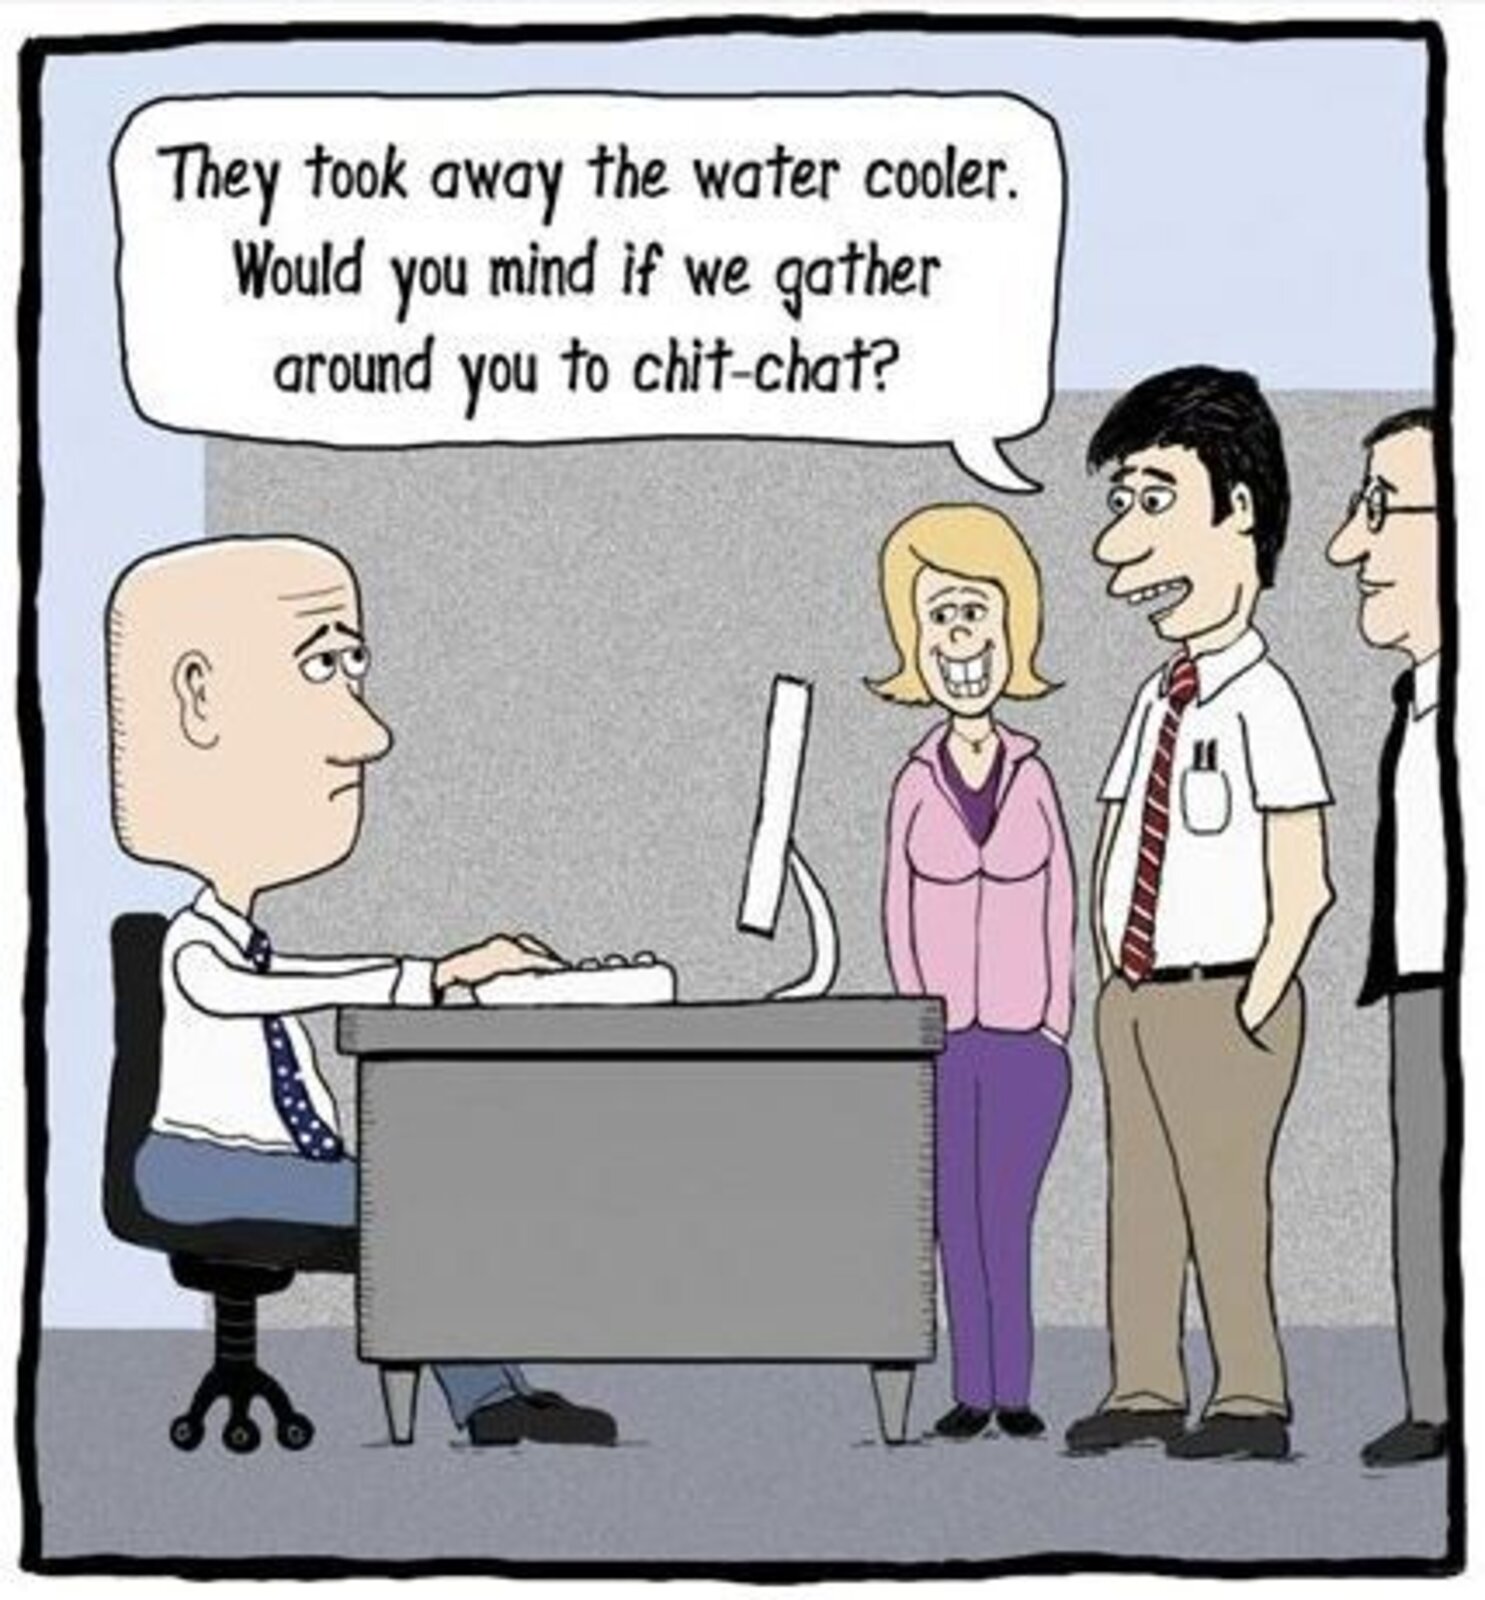 HR jokes